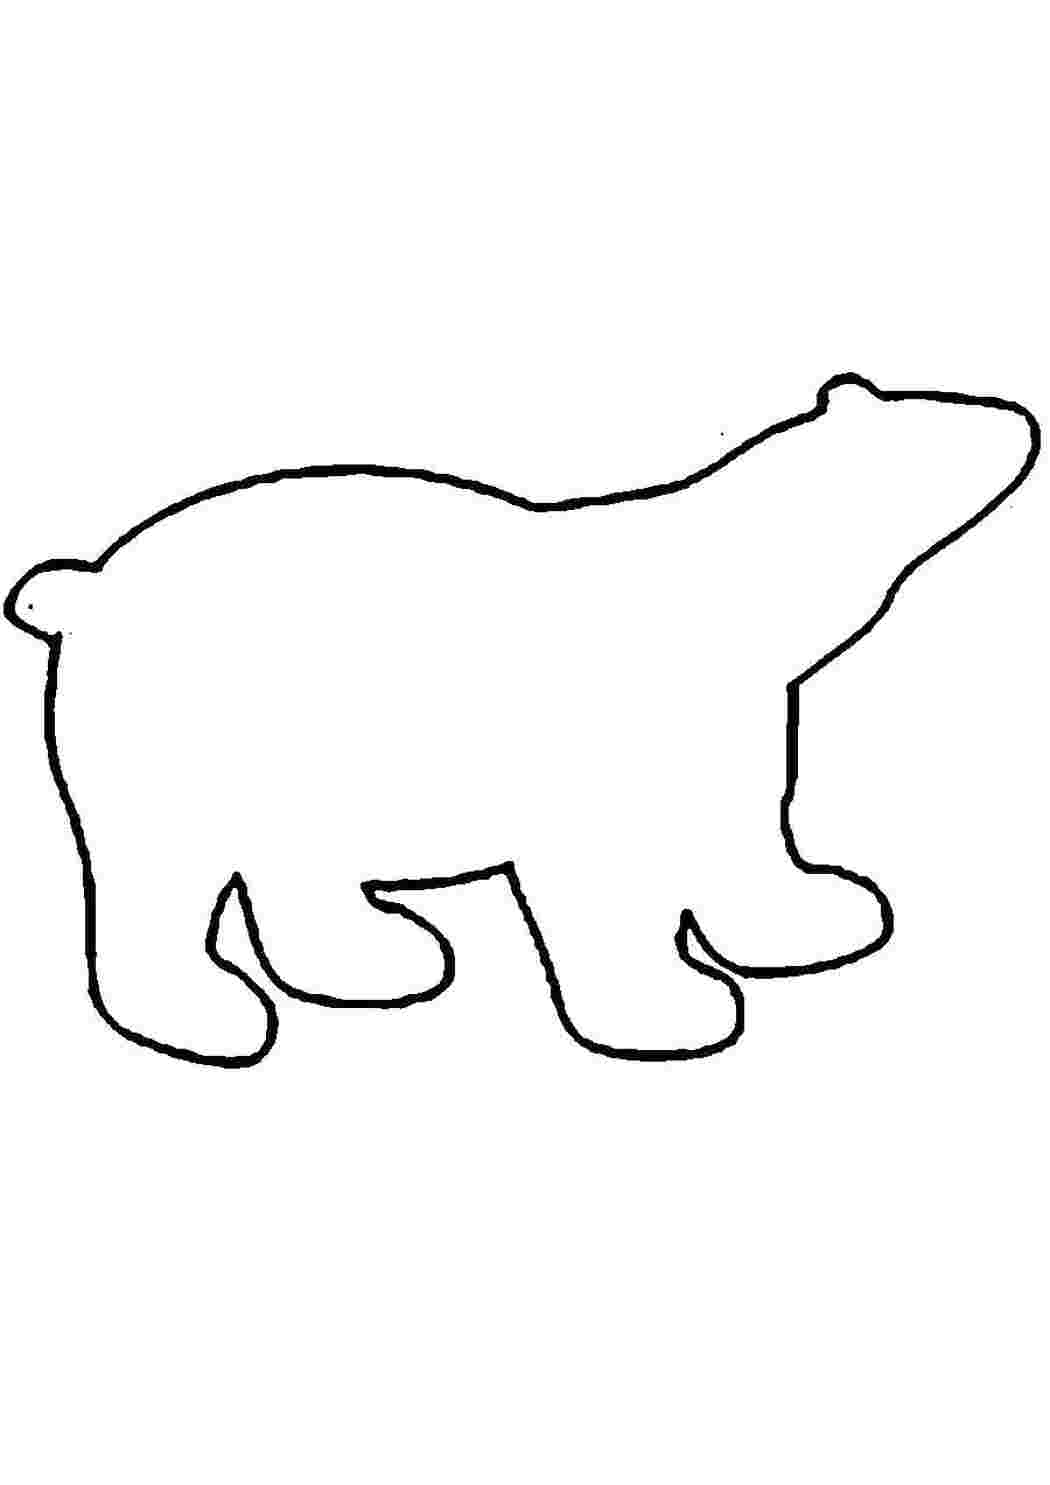 Раскраски Раскраски животные шаблоны медведь контур, животные  трафаркт для вырезания из бумаги медведь медведь